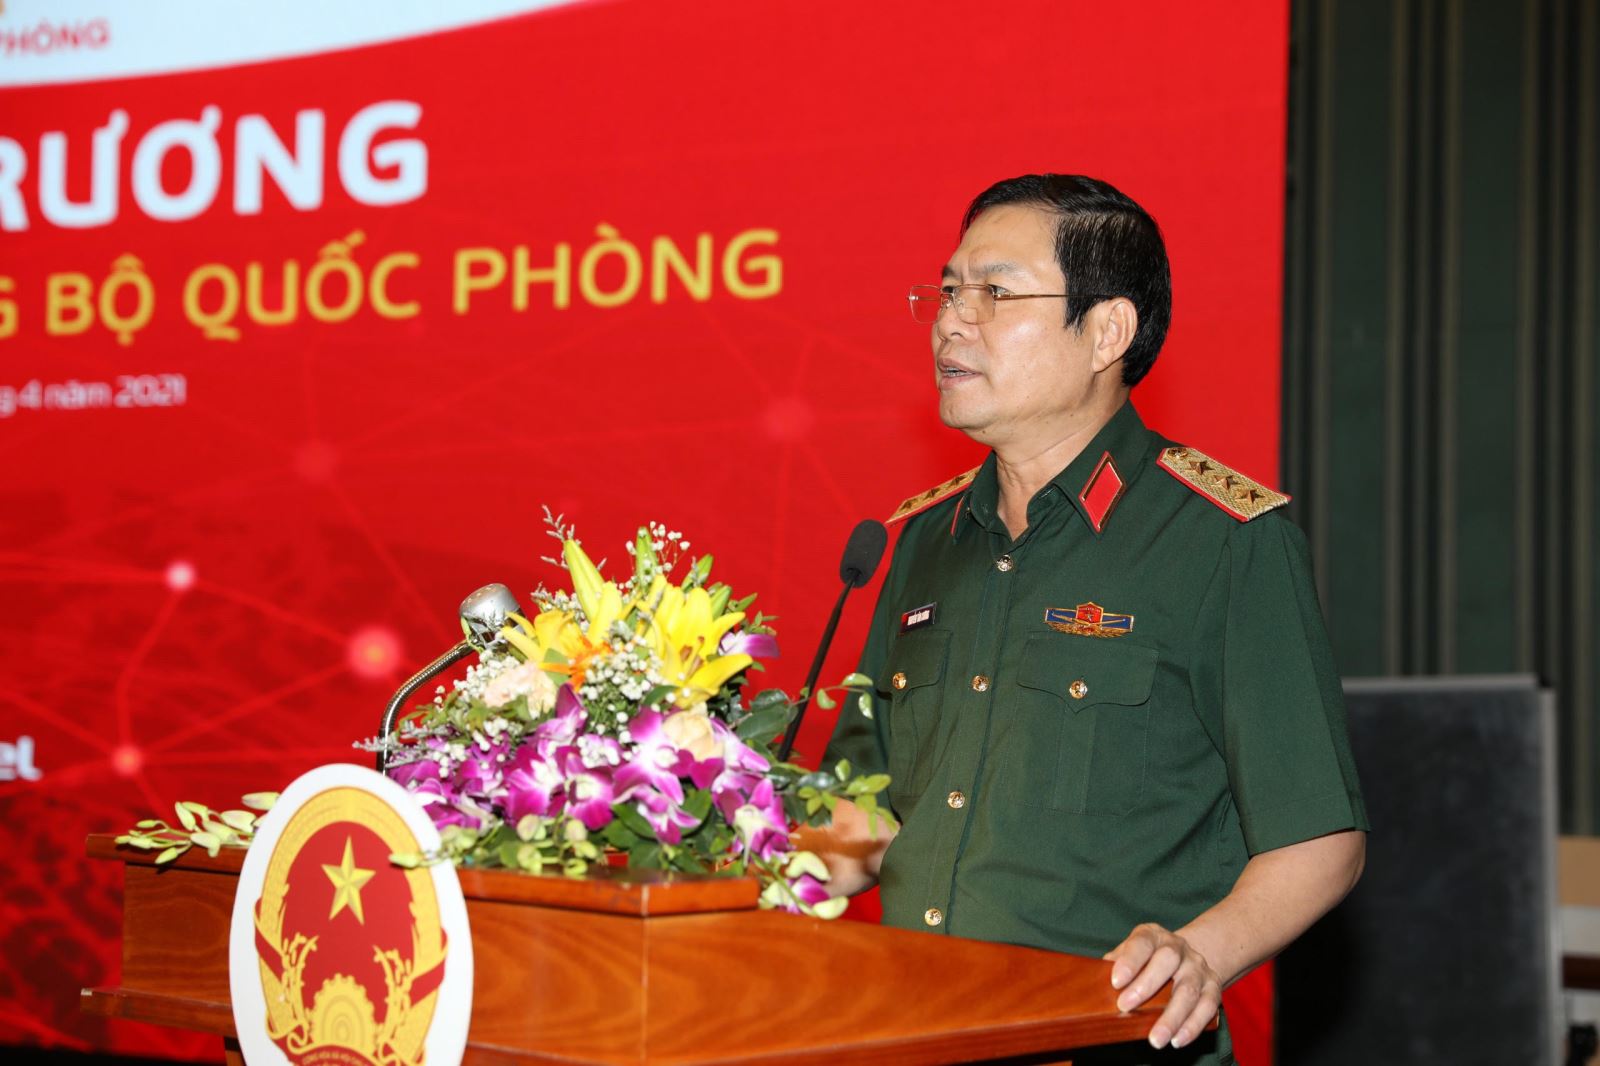 Thượng tướng Nguyễn Tân Cương phát biểu chỉ đạo tại buổi lễ khai trương Cổng dịch vụ công Bộ Quốc phòng - Ảnh: Trọng Toàn